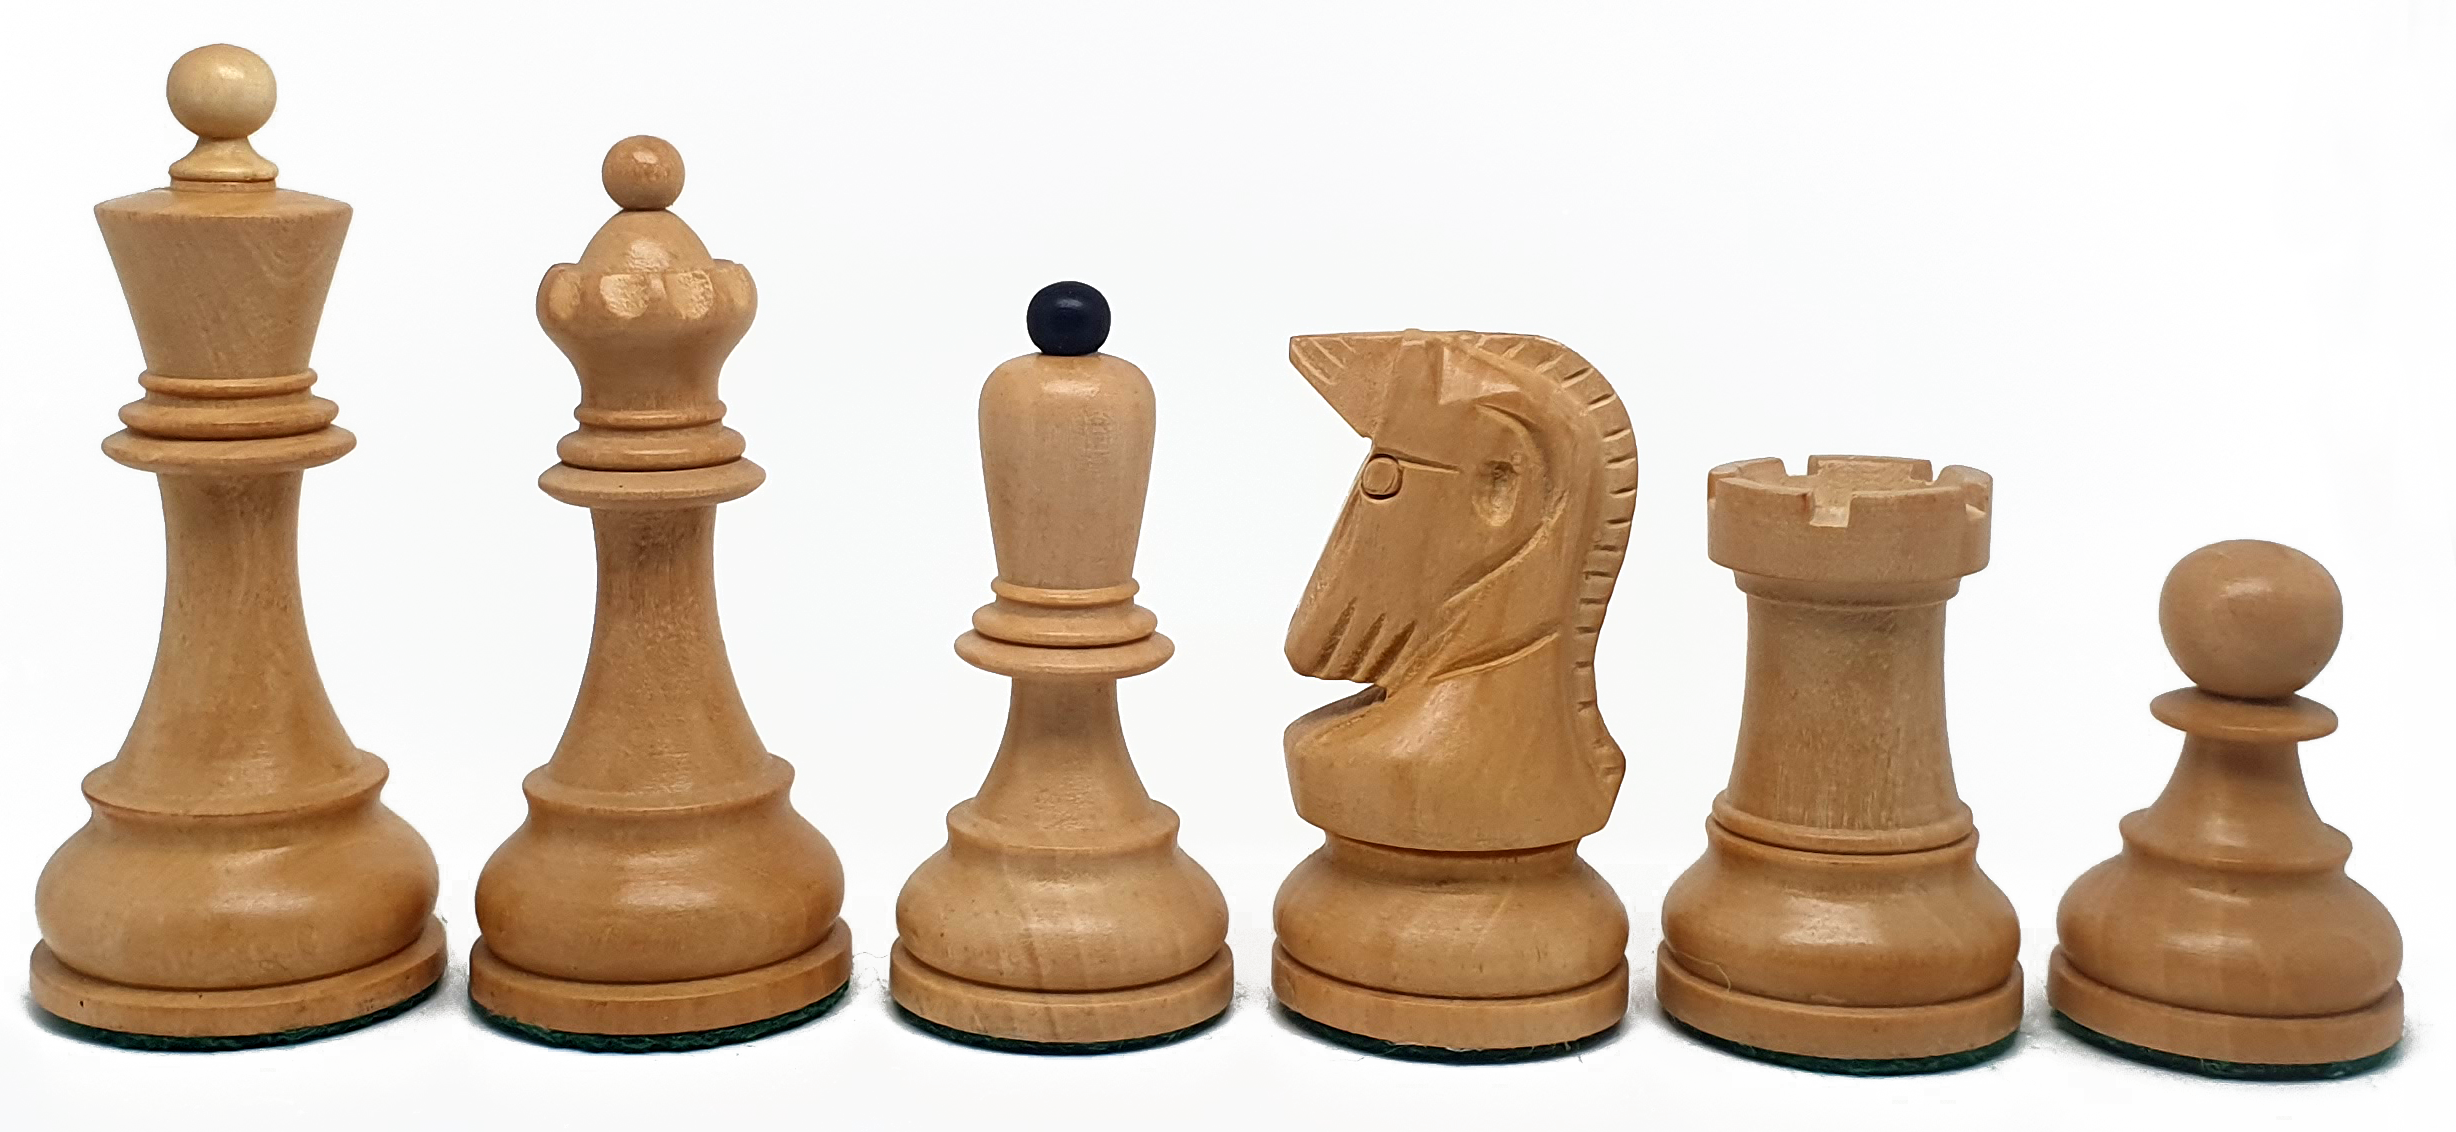 VI/ Piezas de ajedrez modelo Dubrovnik "3.50" Ebanizado.